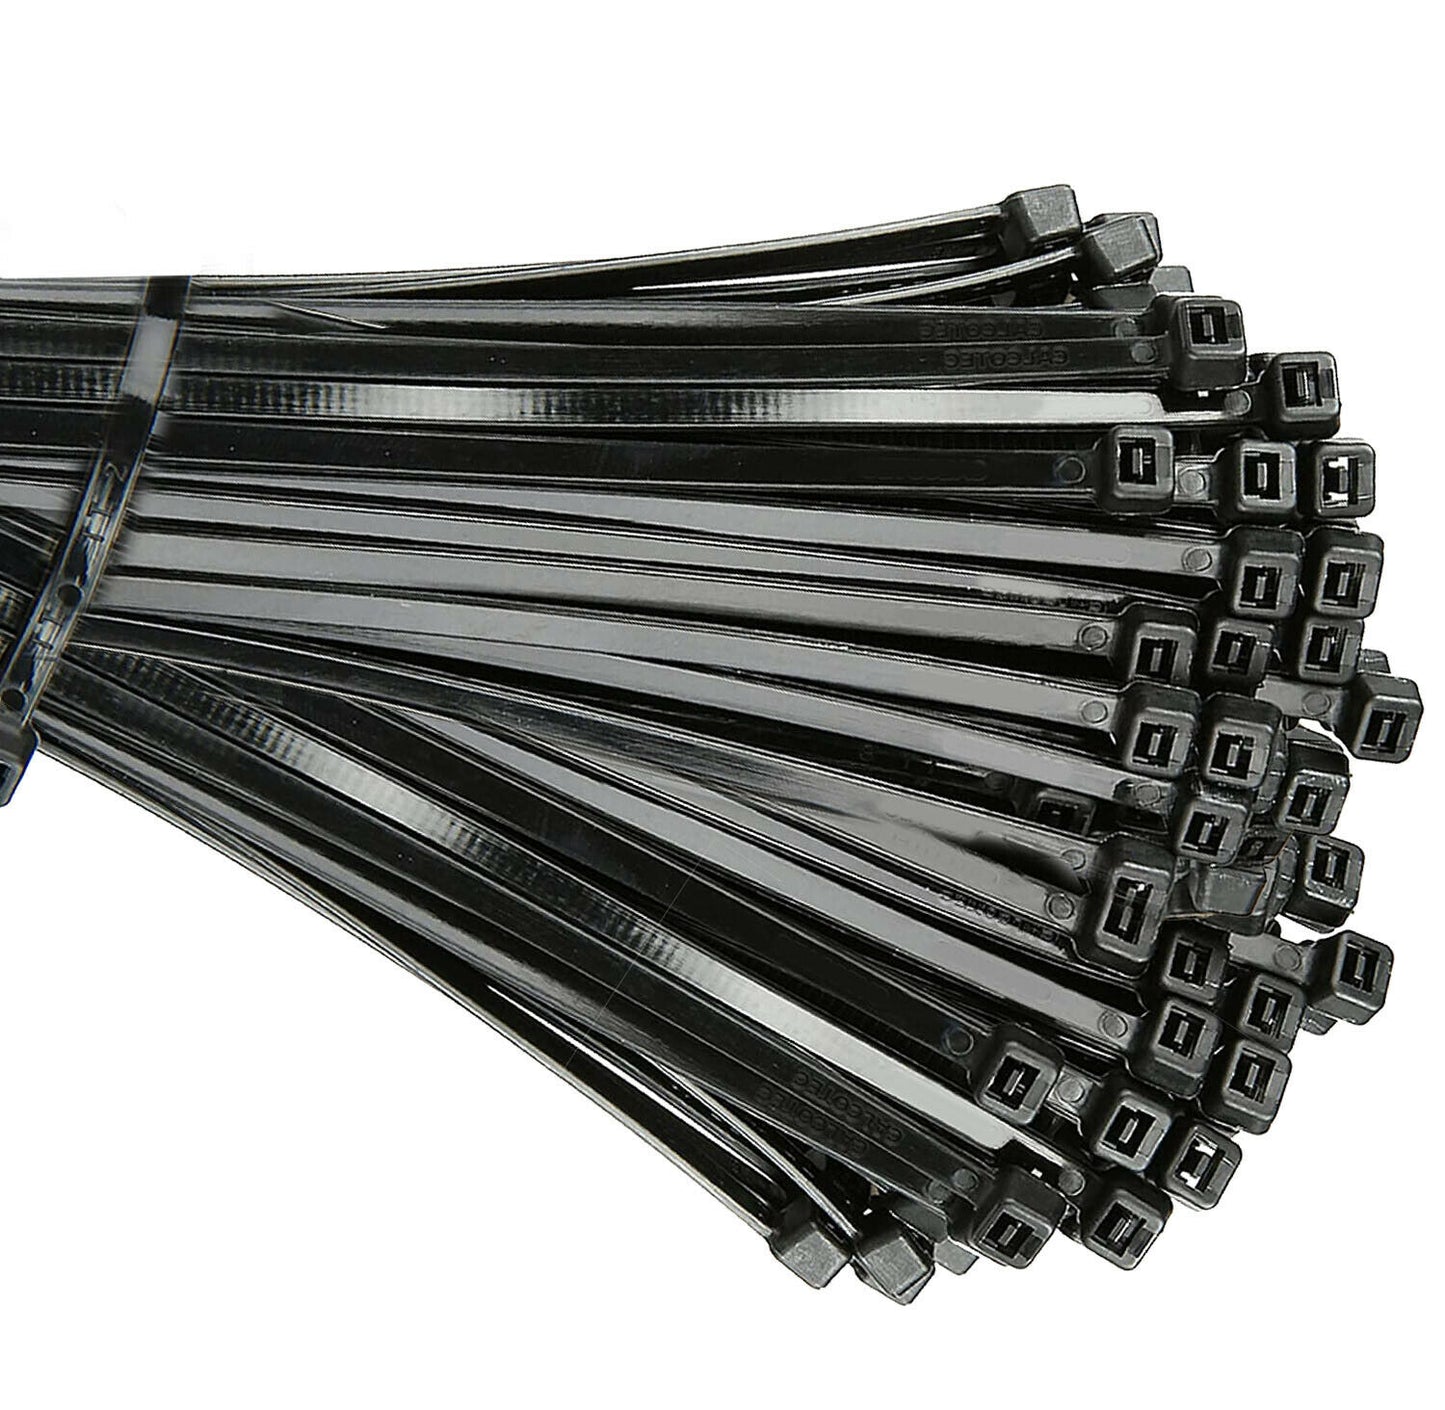 100 根电缆扎带 12 英寸长电缆扎带超强尼龙绳缠绕黑色